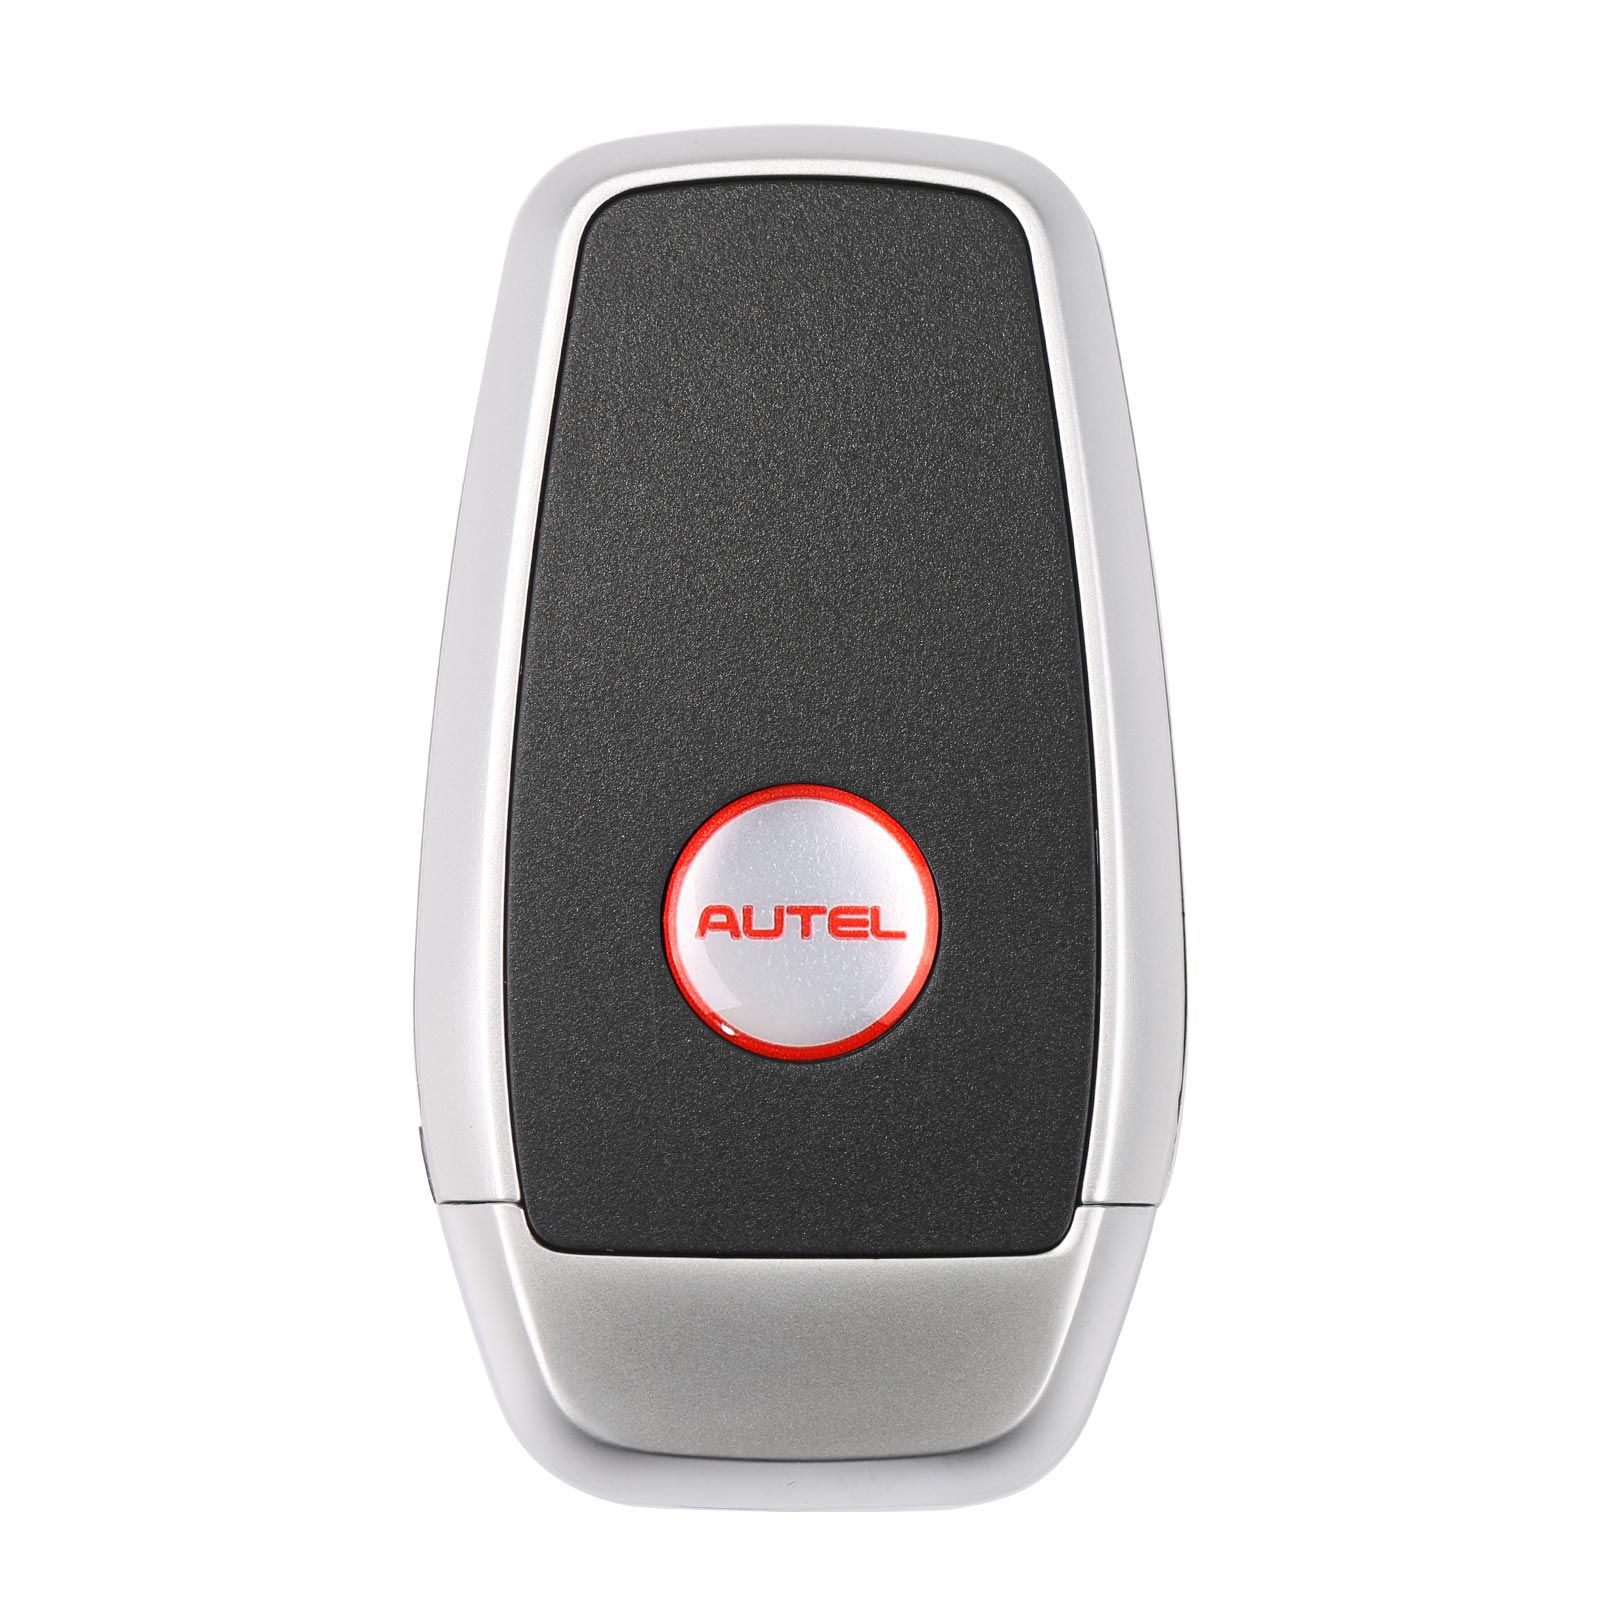 AUTEL IKEYAT006BL 6 Tasten Unabhängige Universal Smart Key 5pcs/lot